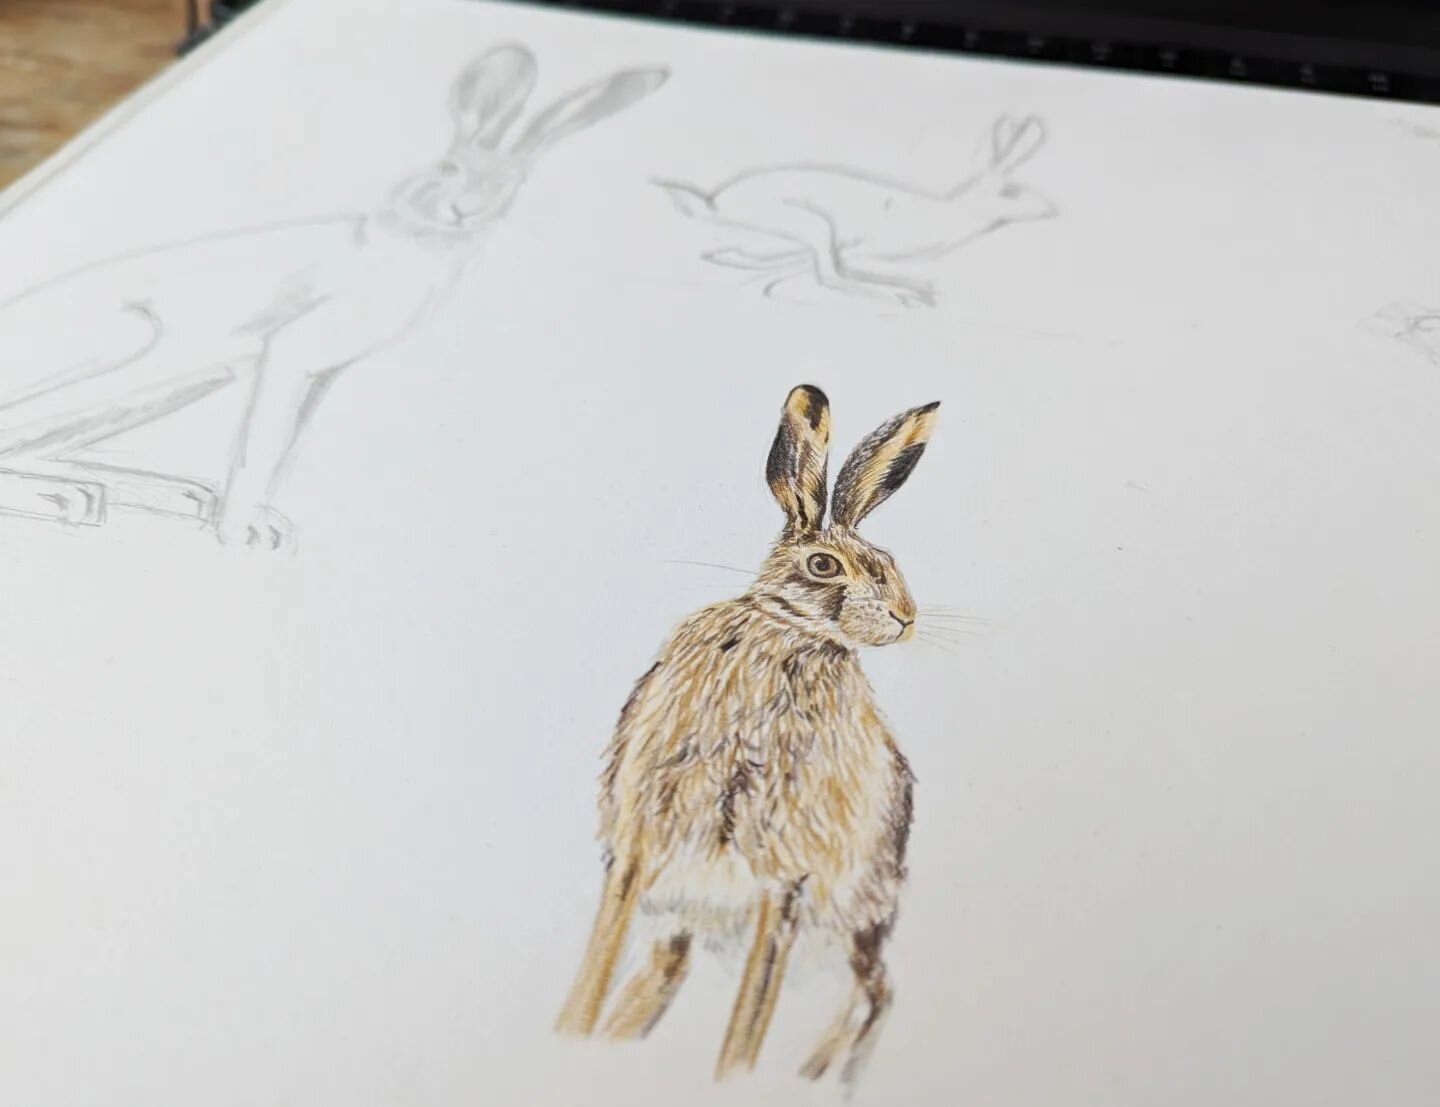 Spring sketchbooking.

#hare #lepus #spring #britishwildlife #illustration #drawing #sketchbook